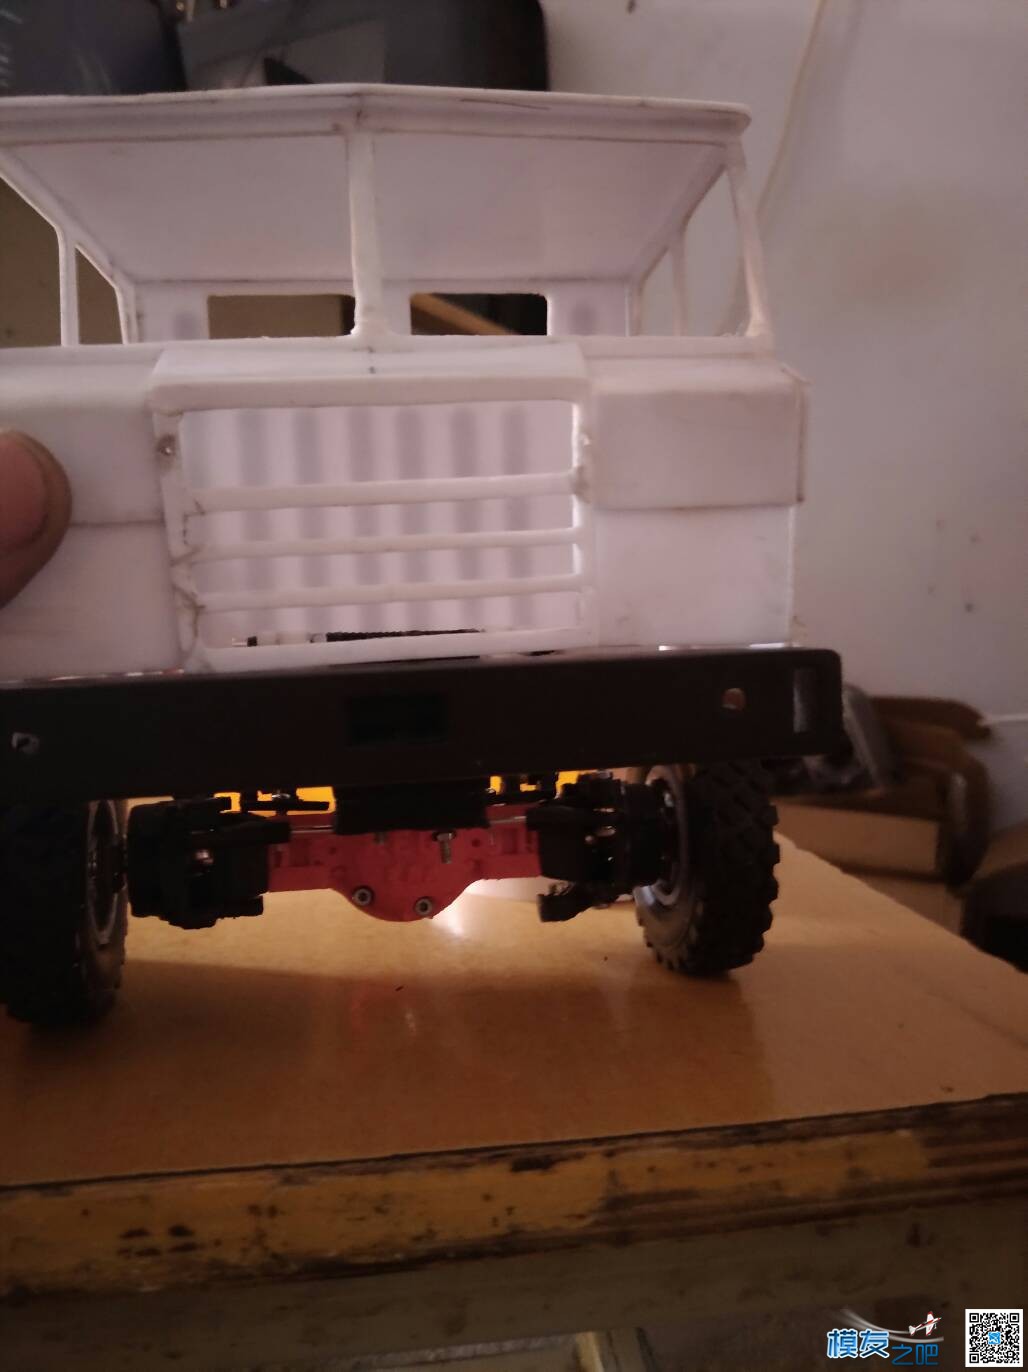 太脱拉第二弹—1:20太脱拉达喀尔沙漠卡车 3D打印,图纸 作者:铜锣湾扛把子 6906 